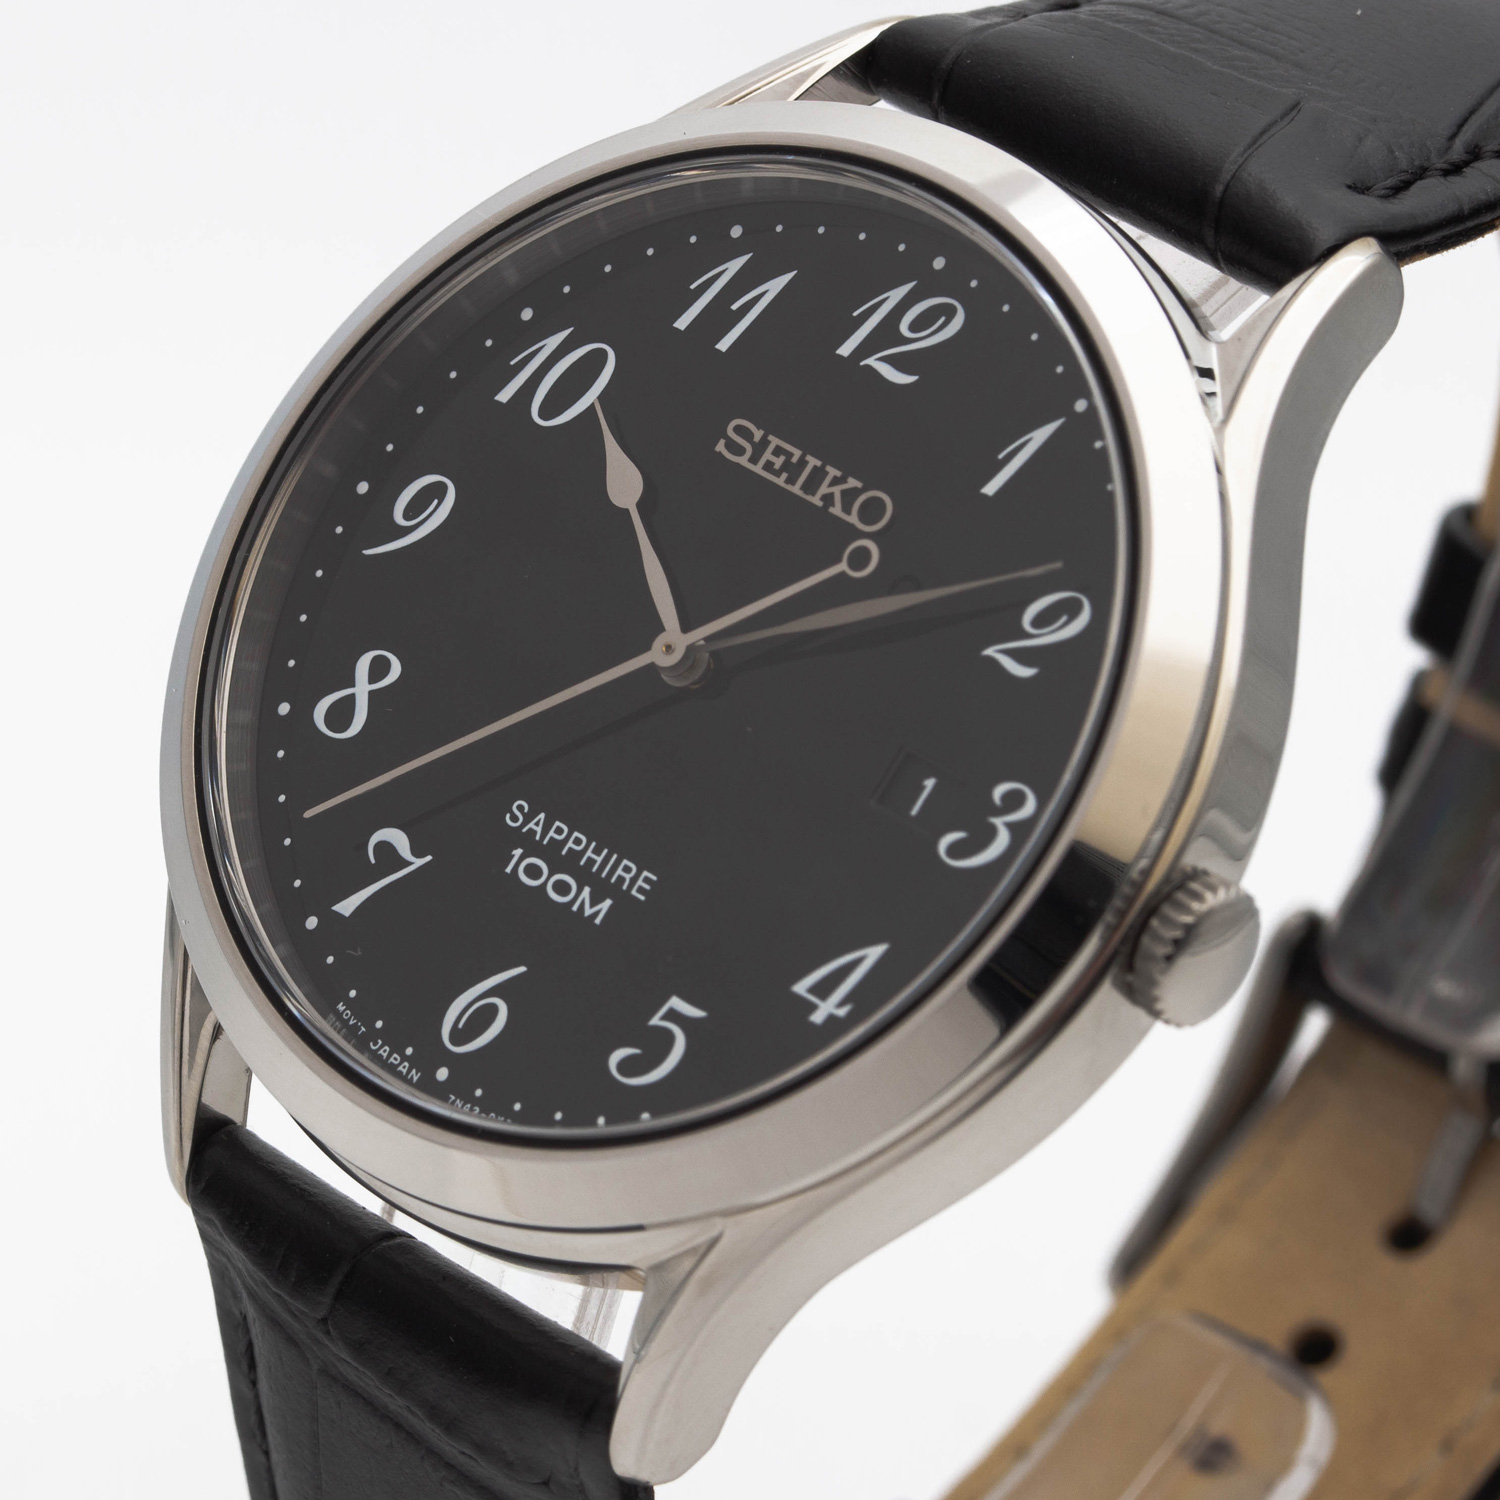 Часы Seiko SGEH77P1 - купить мужские наручные часы в интернет-магазине  . Цена, фото, характеристики. - с доставкой по России.